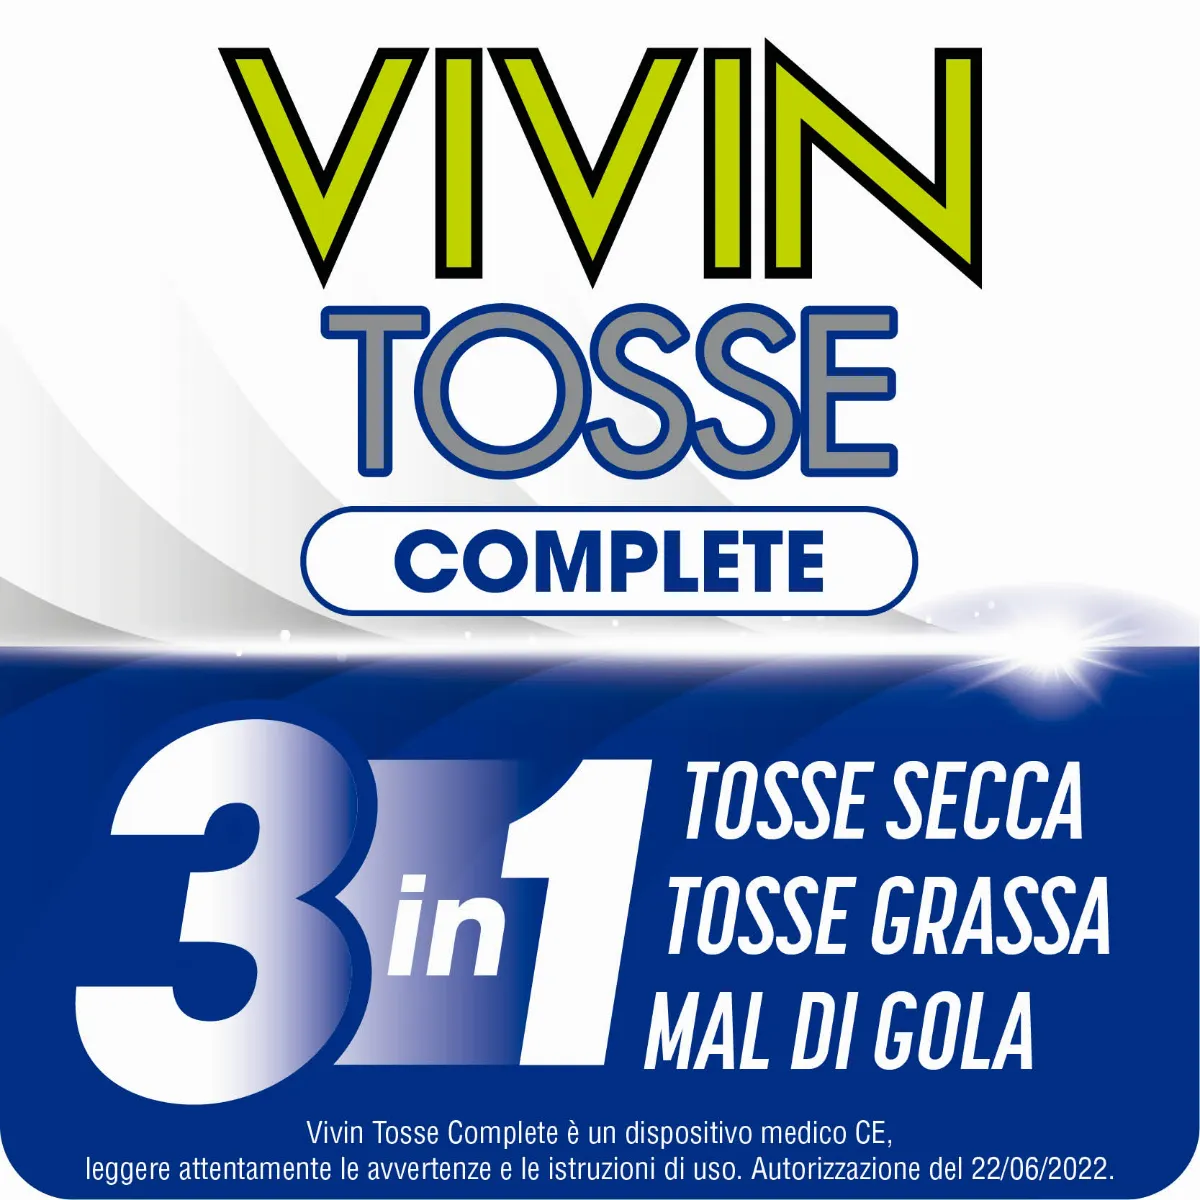 Vivin Tosse Complete 3 in 1 Complete Pocket 14 Stick Tosse Grassa, Secca e Mal di Gola